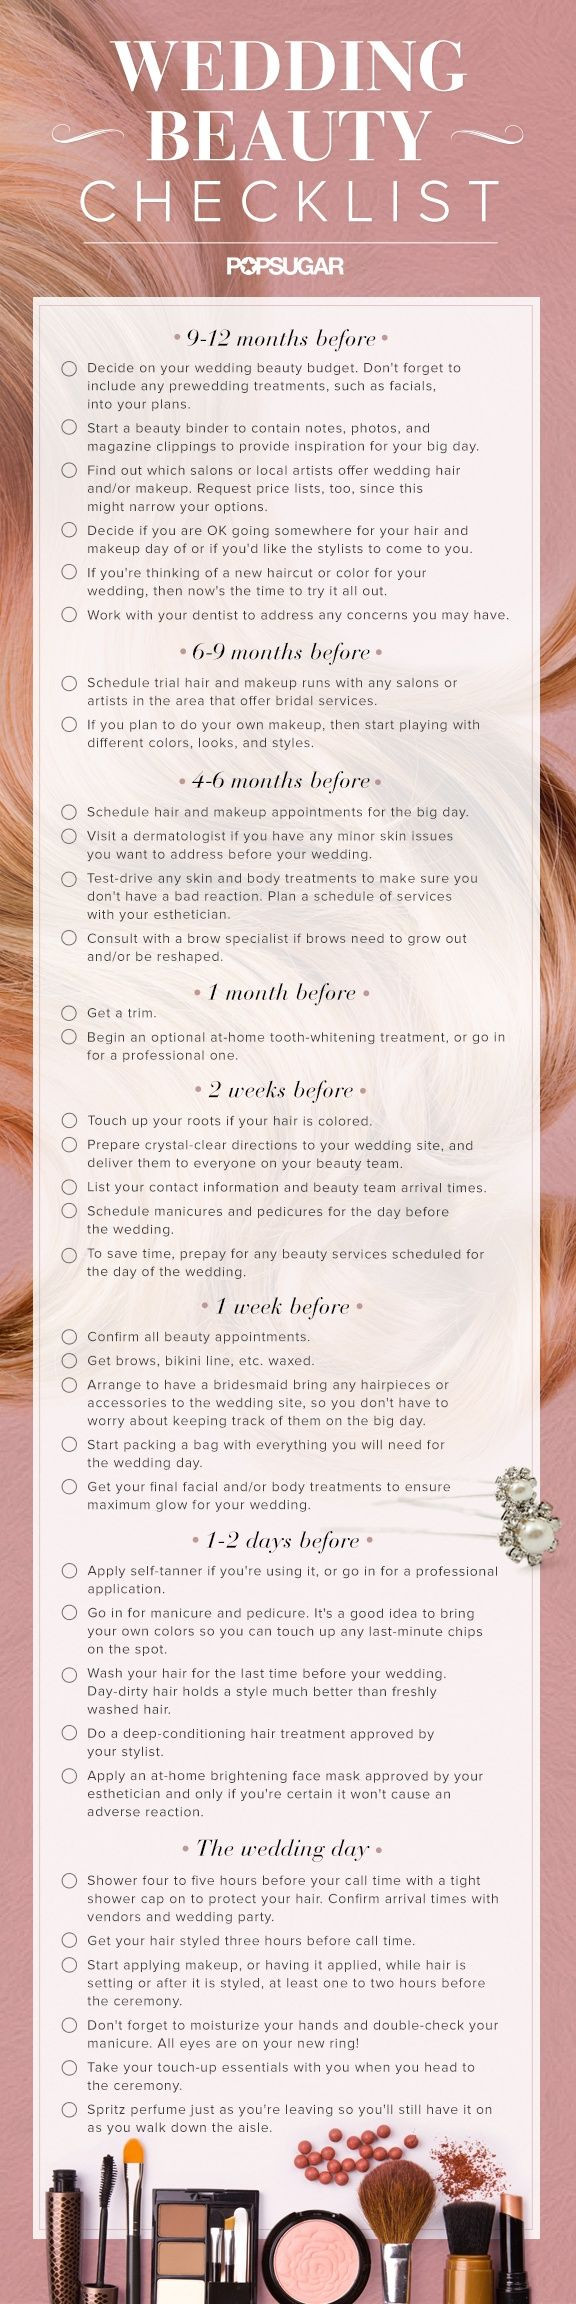 Checkliste Standesamtliche Hochzeit
 Download the Ultimate Wedding Beauty Planning Checklist